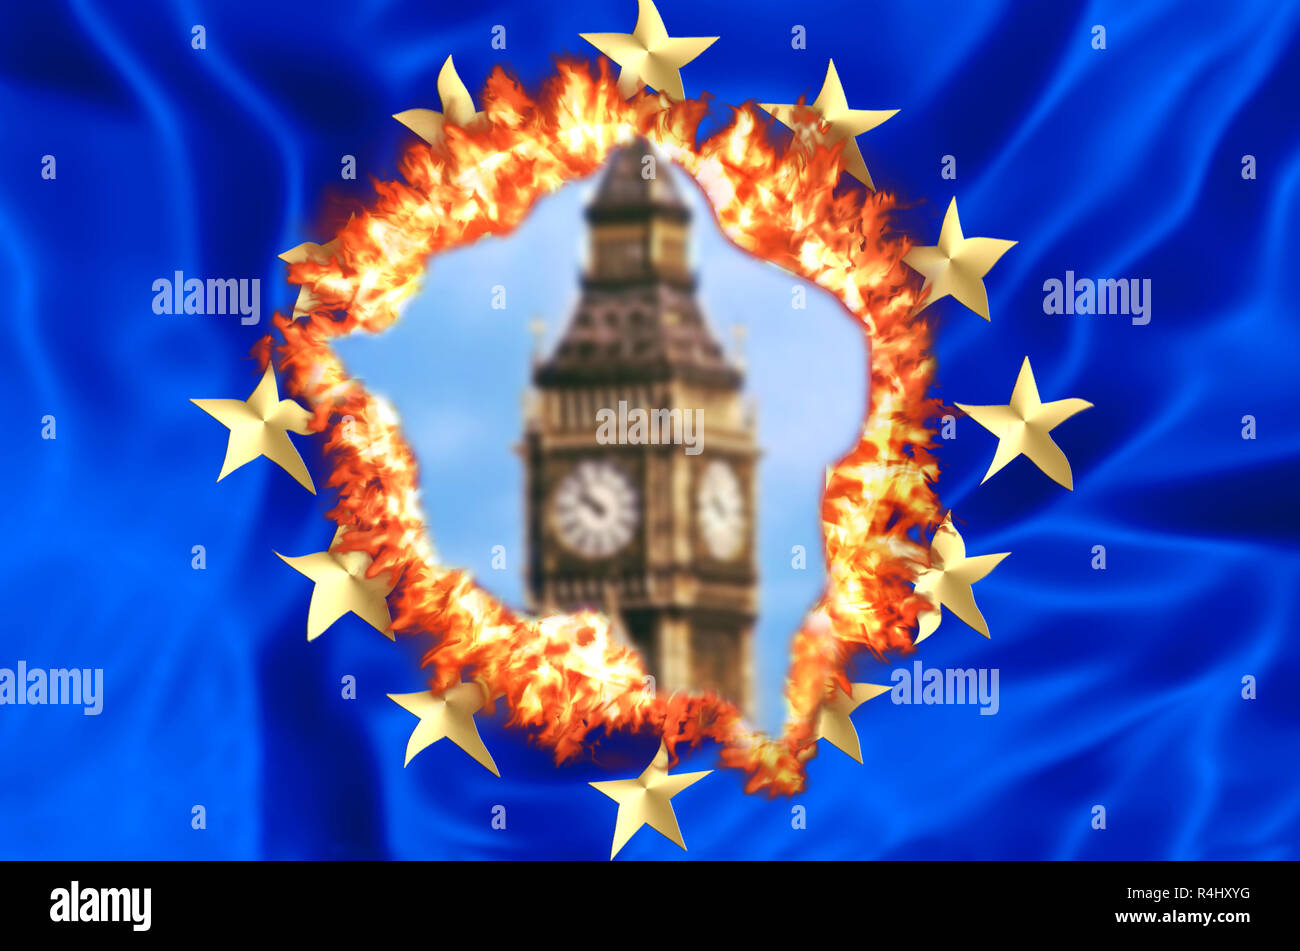 Drapeau européen en feu pour Royaume-uni avec sortie floue Big Ben Tour de Londres, la chambre d'un parlement britannique. Le concept financier pour Brexit et division de l'UE. Banque D'Images